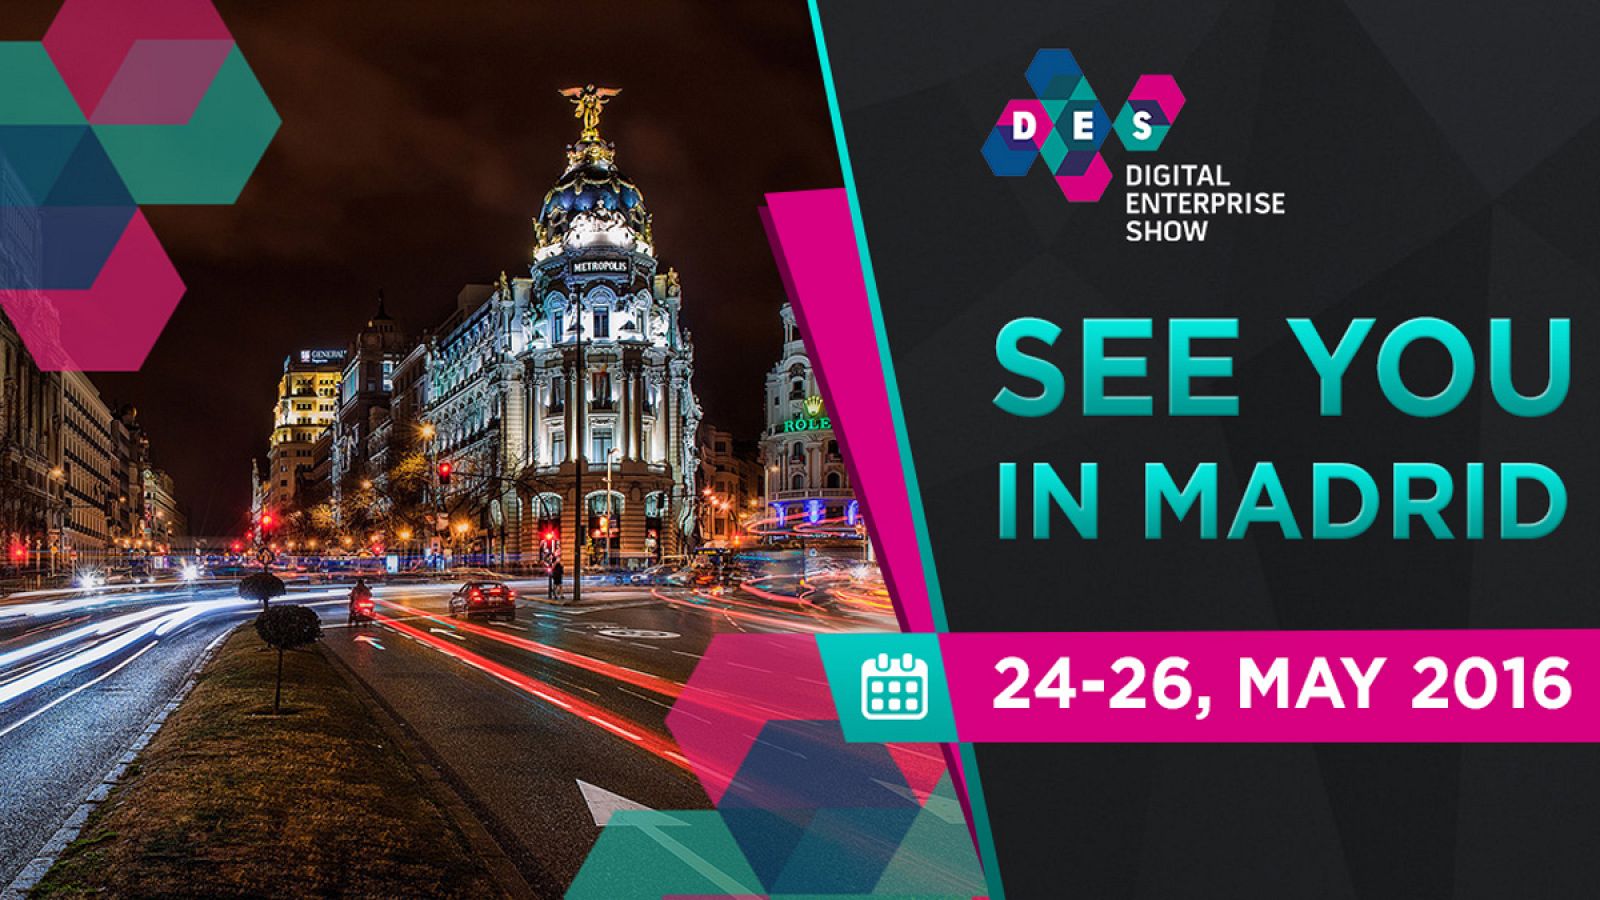 Madrid albergará la primera edición de Digital Enterprise Show.